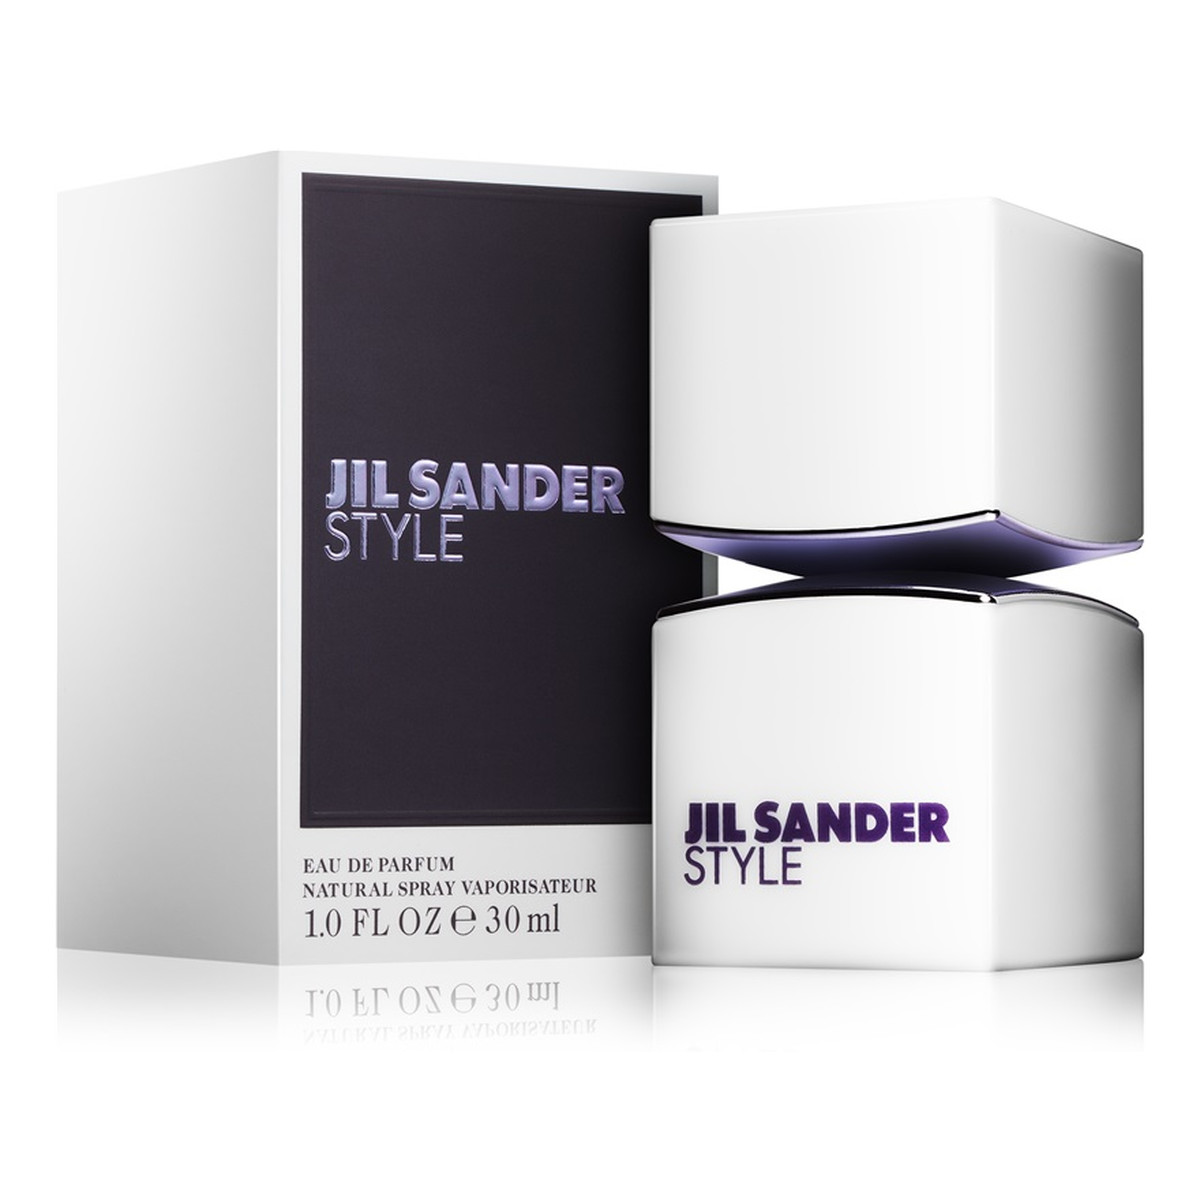 Jil Sander Style woda perfumowana dla kobiet 30ml